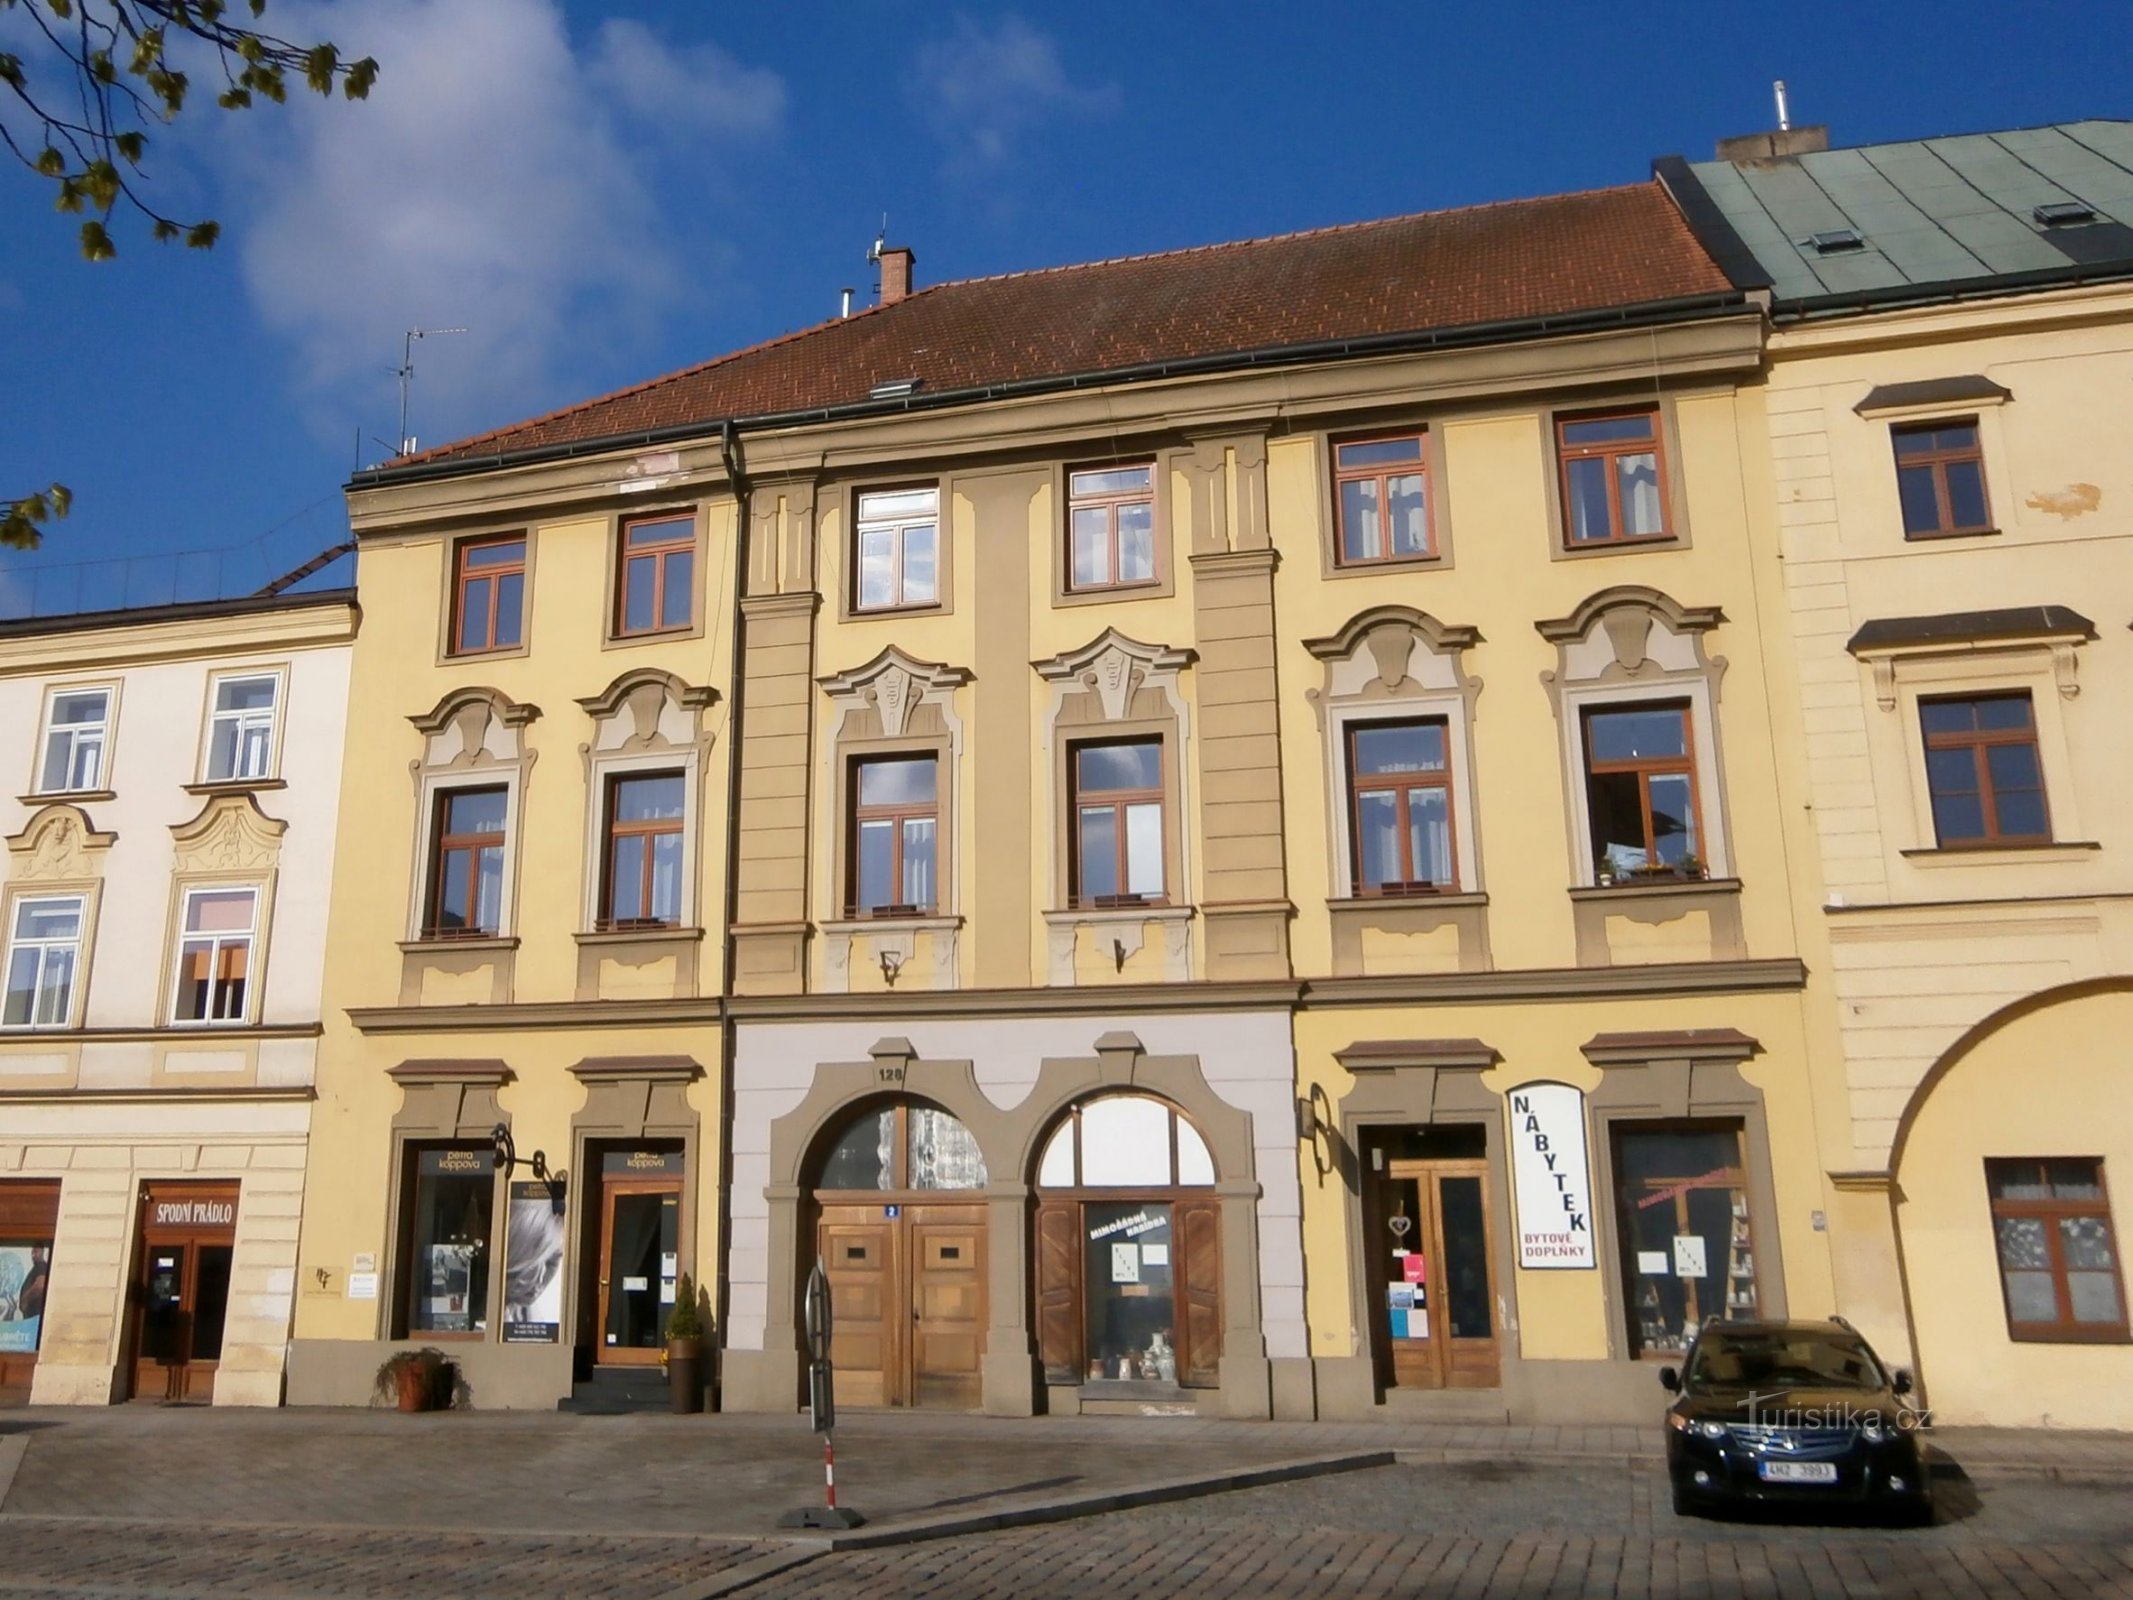 Malé náměstí čp. 128 (Hradec Králové, 14.4.2017)